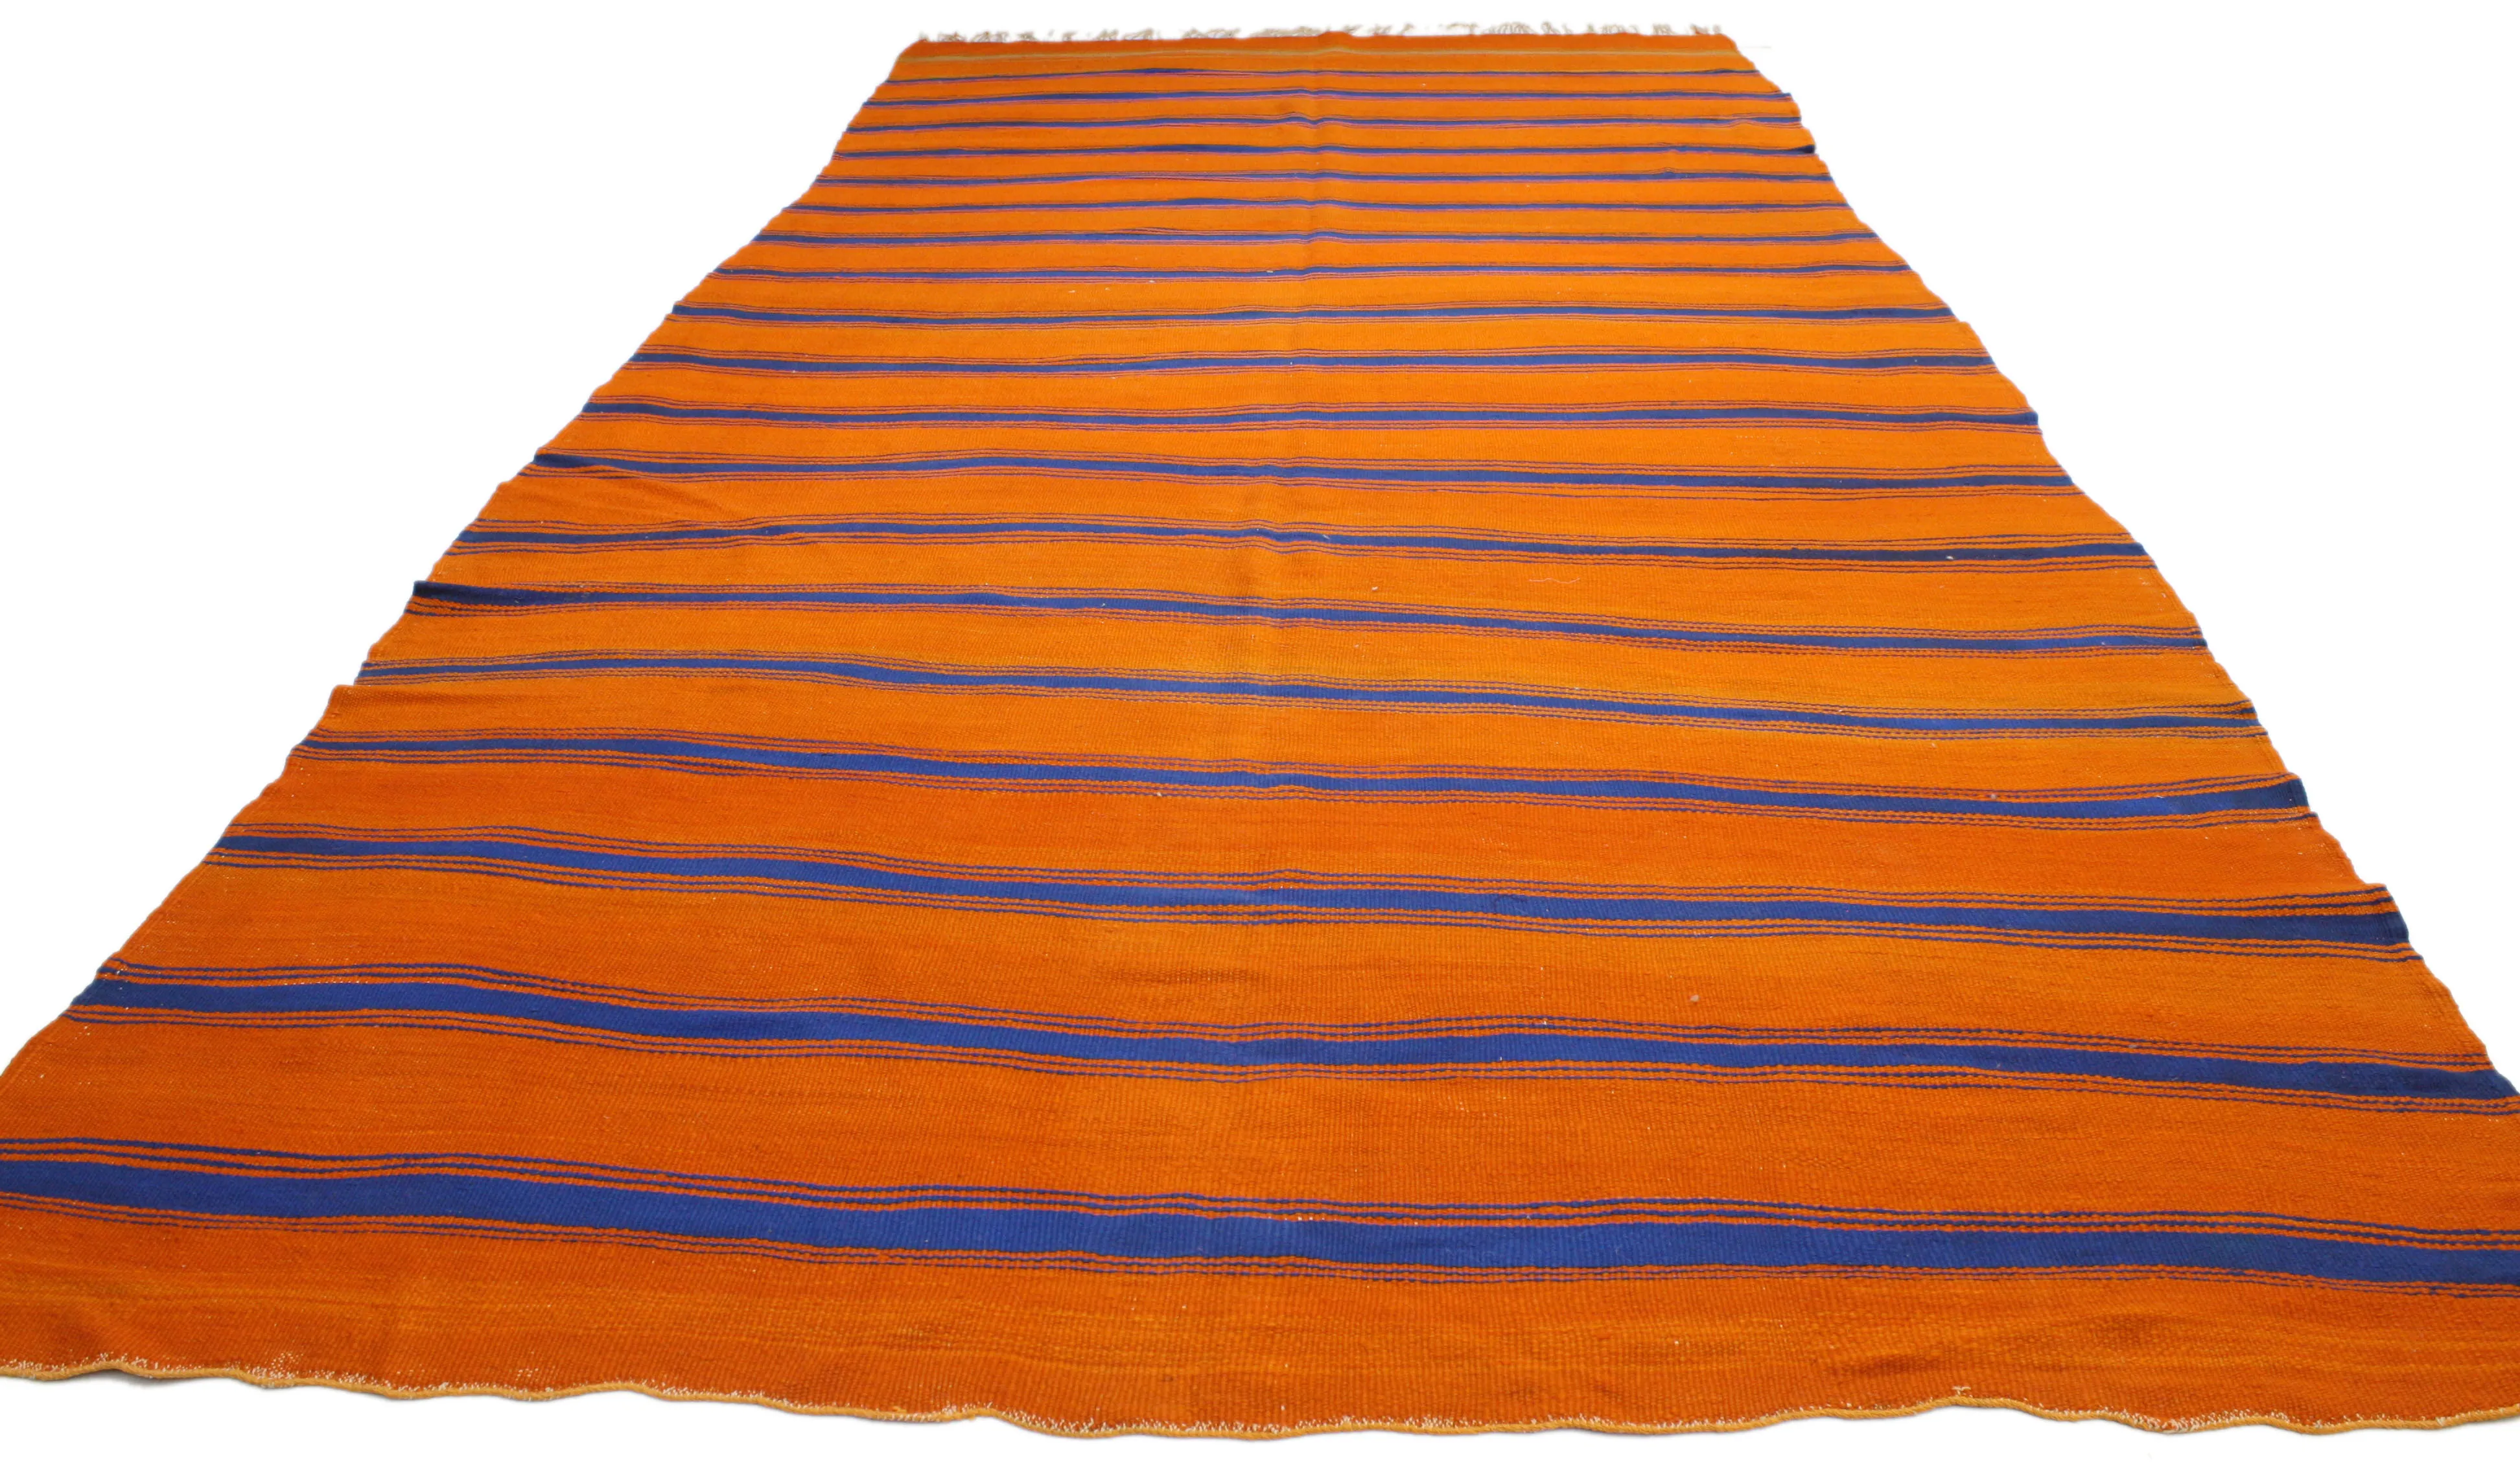 Moroccan Striped Kilim Rug - 5'7" x 12'1" - Esmaili Rugs & Antiques - Orange - Orange